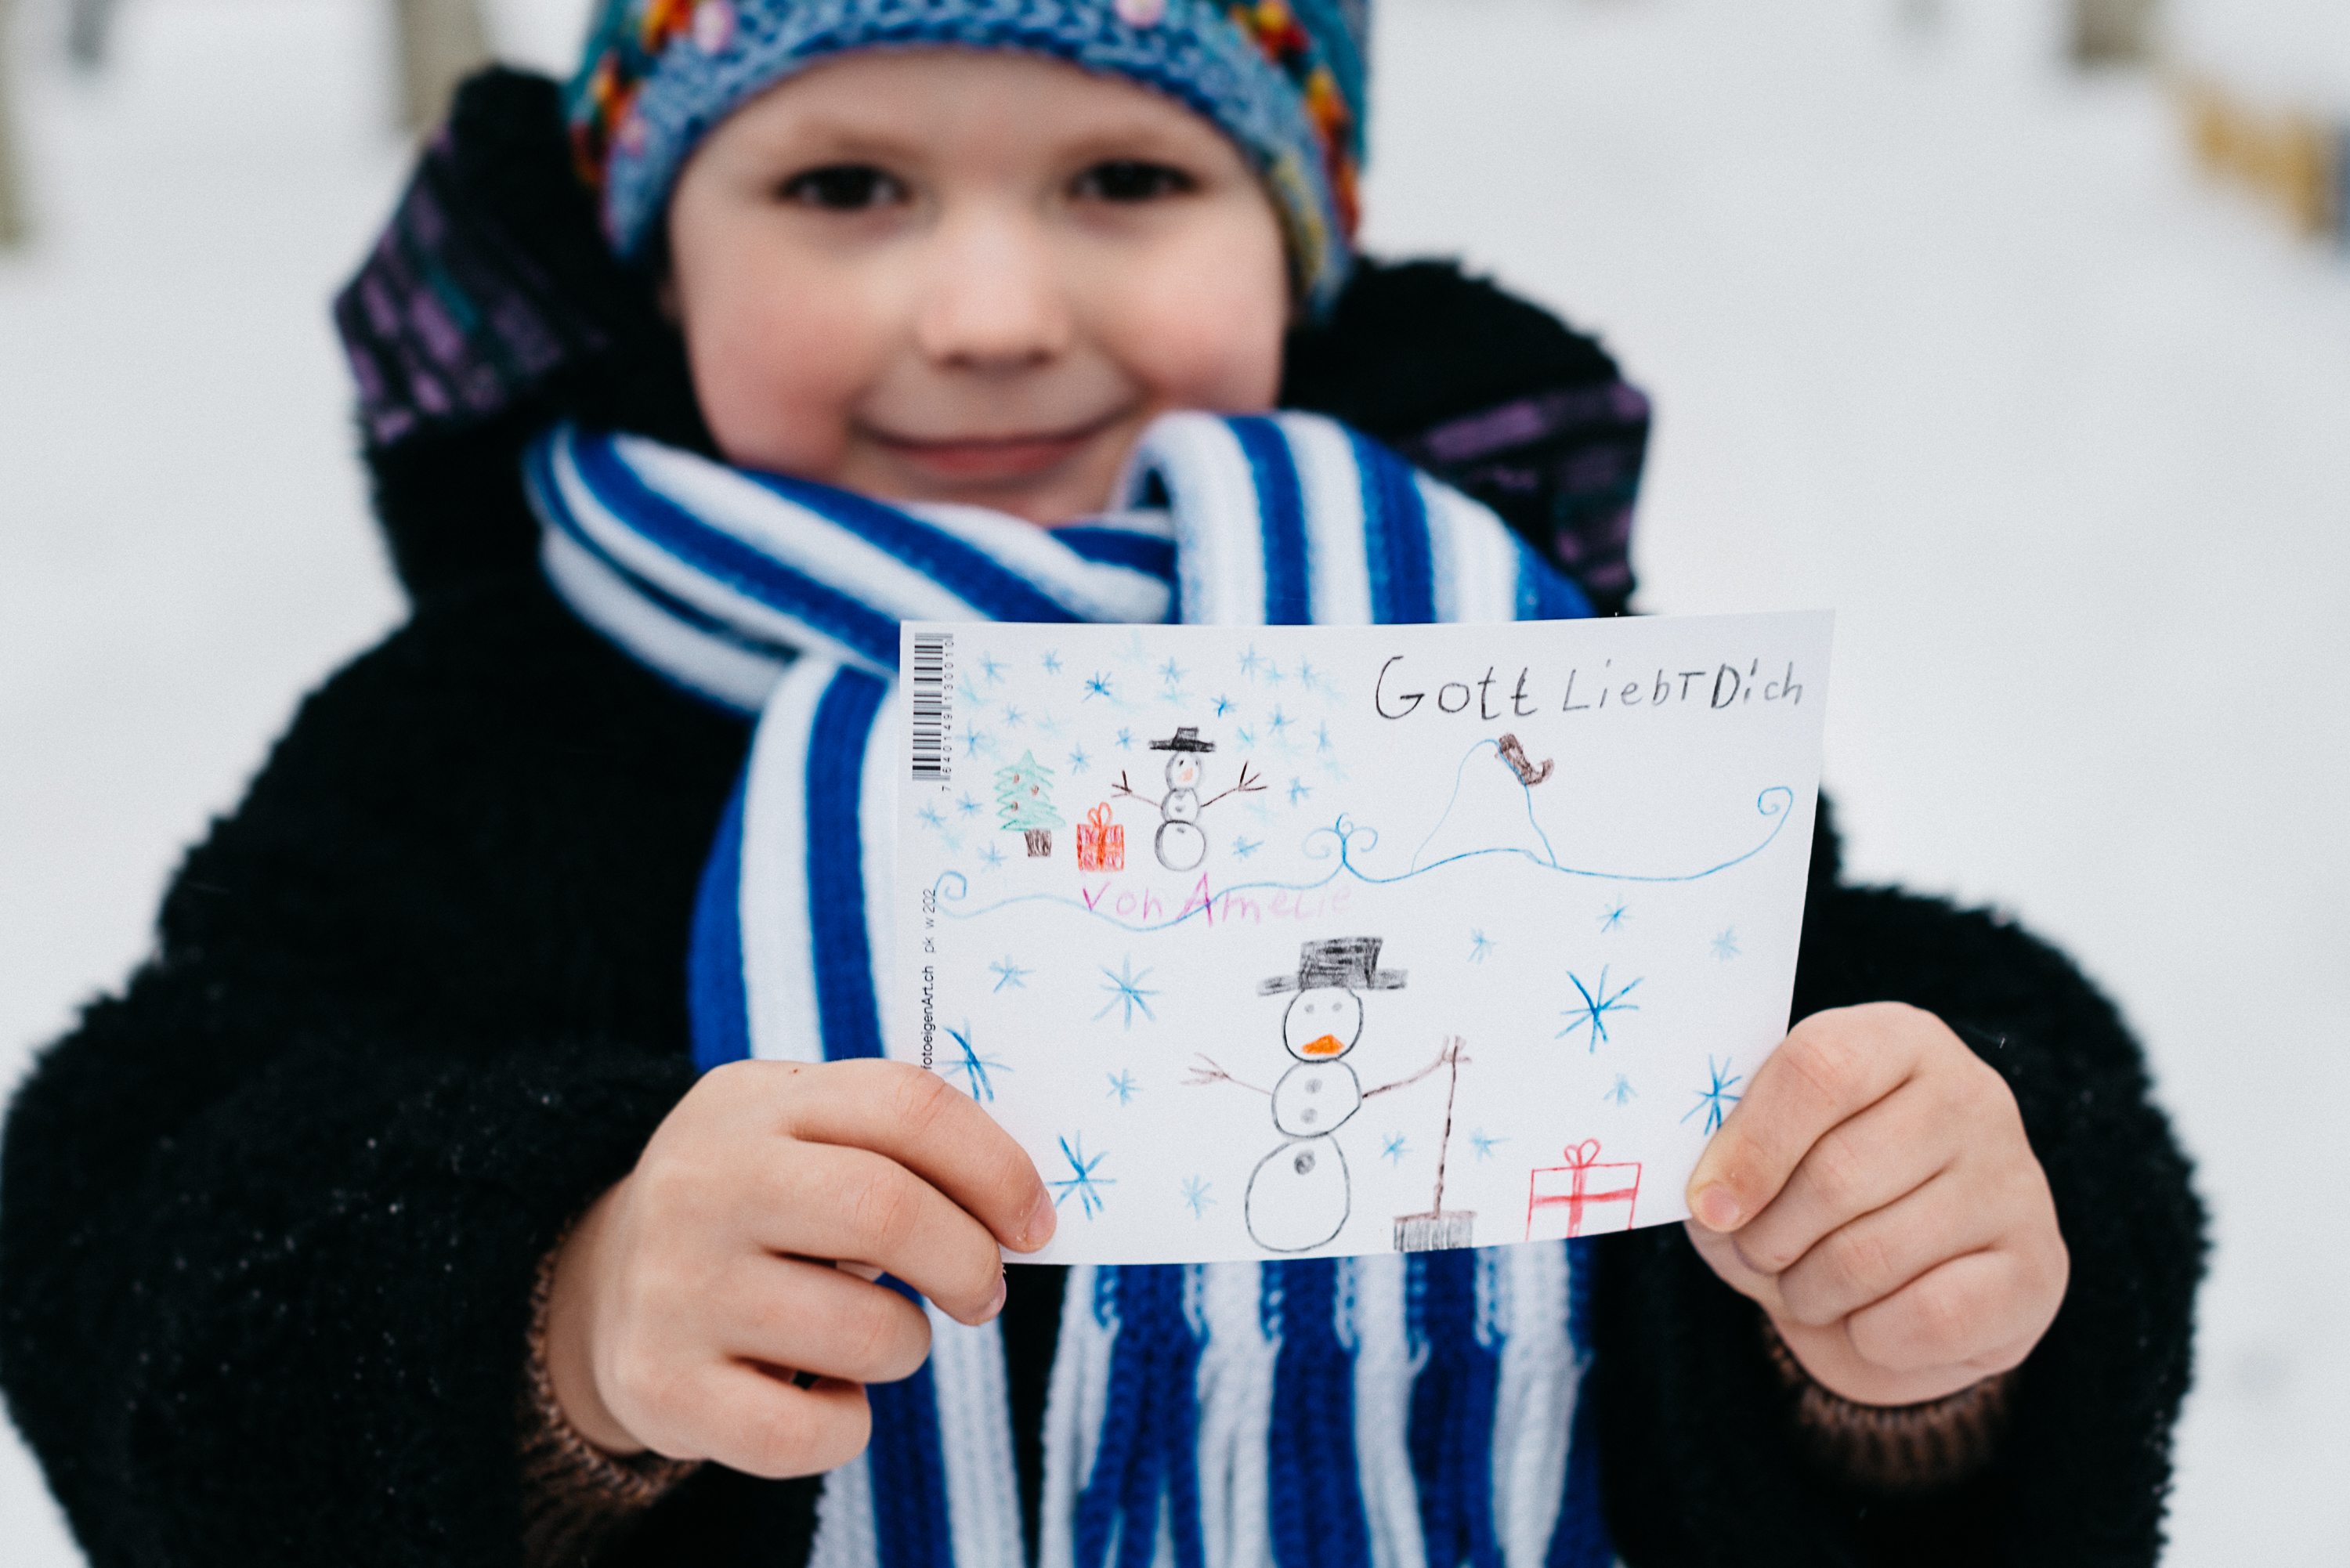 Fotodokumentation, Begleitreise von Weihnachten im Schuhkarton Verteilungen mit Geschenke der Hoffnung in Weissrussland/Belarus 2017. Foto: David Vogt/GdH.